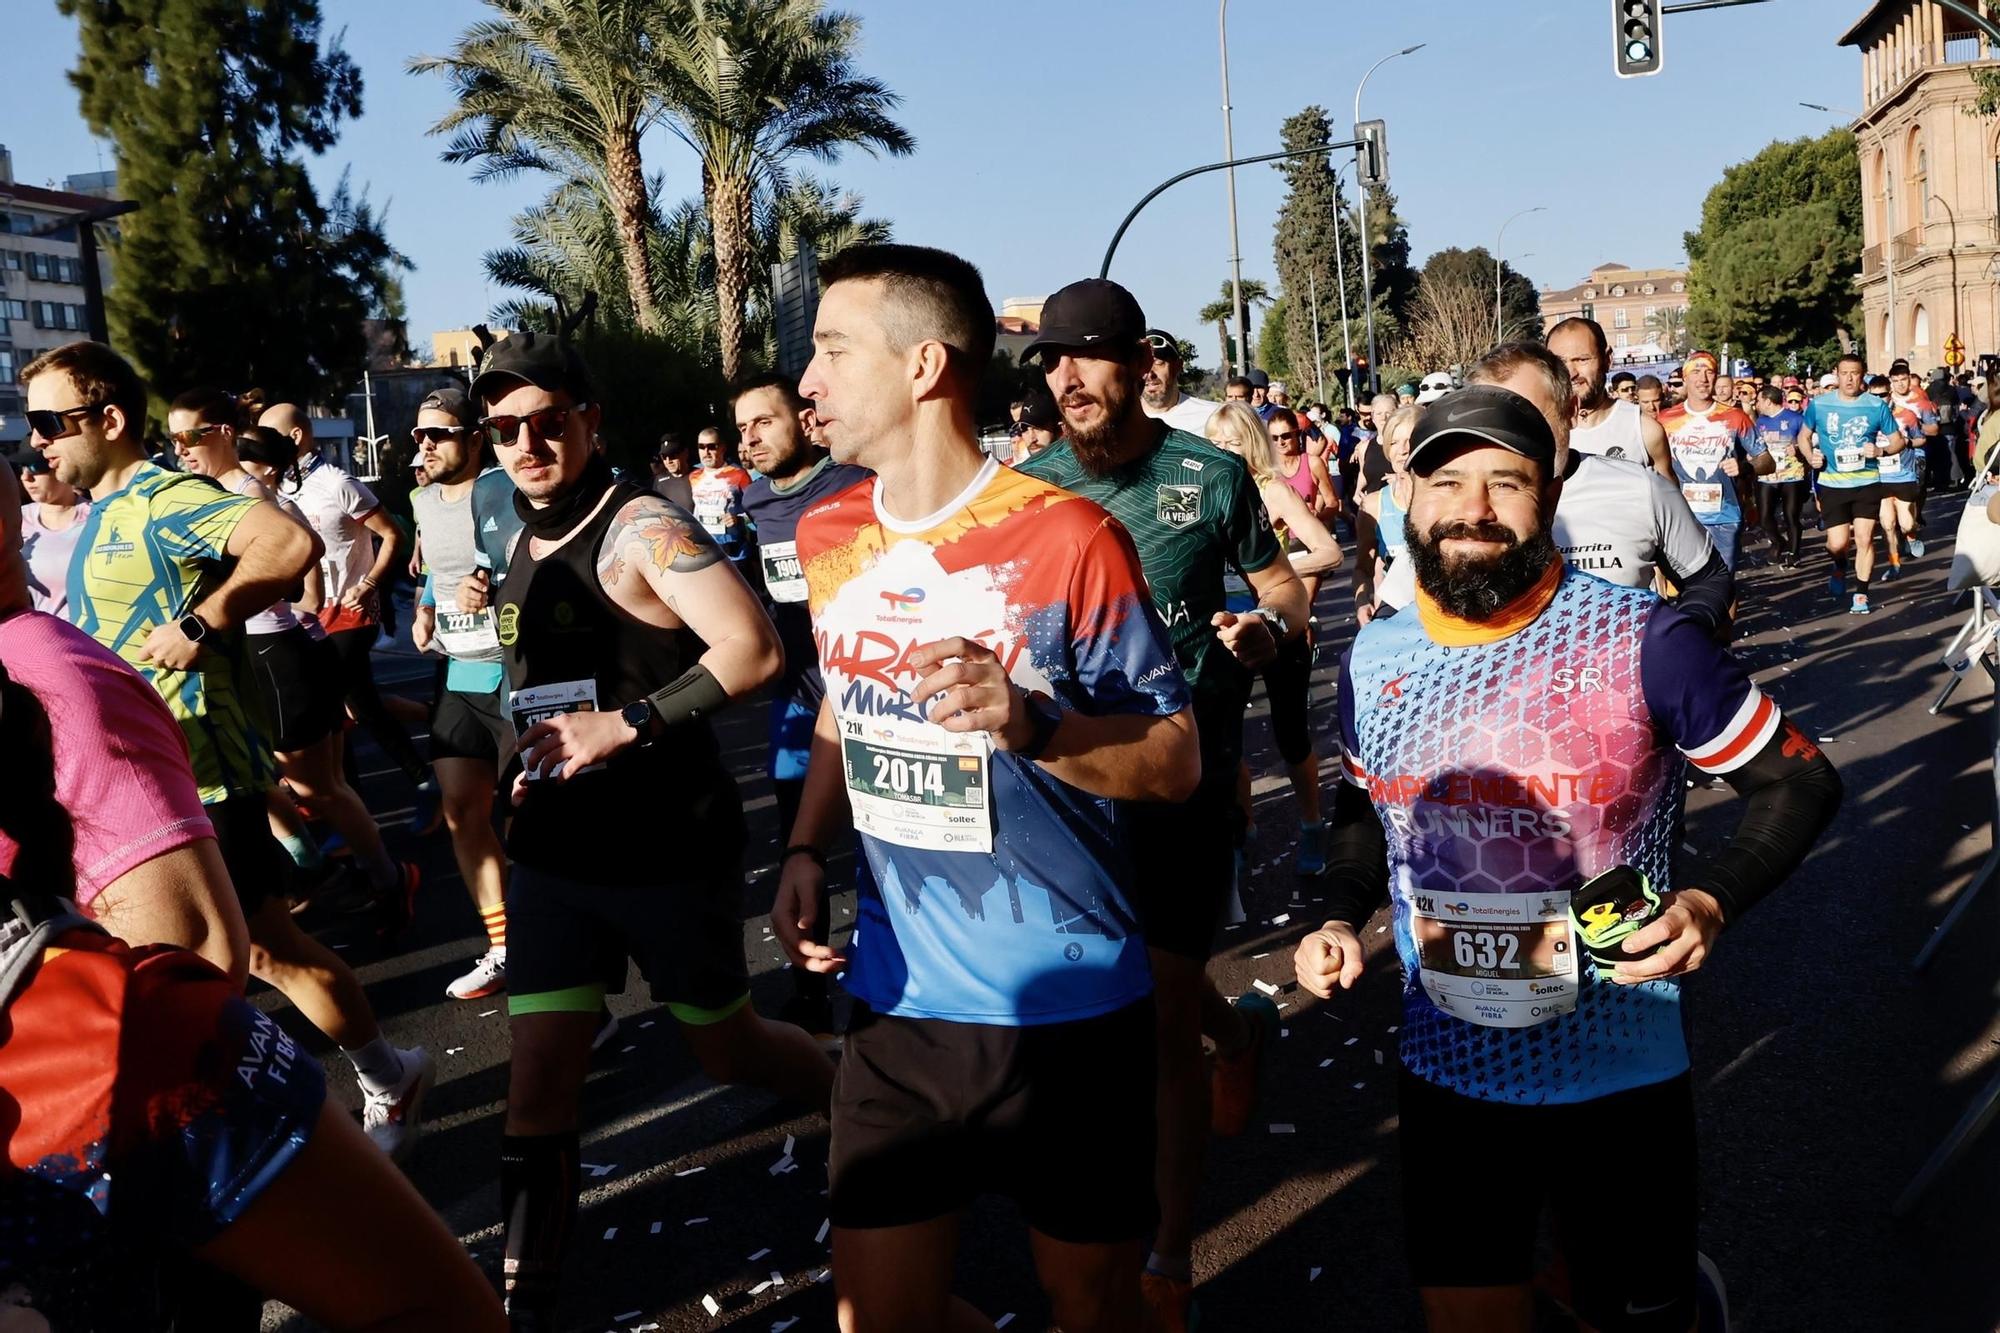 FOTOS: la TotalEnergies Murcia Maratón Costa Cálida en imágenes